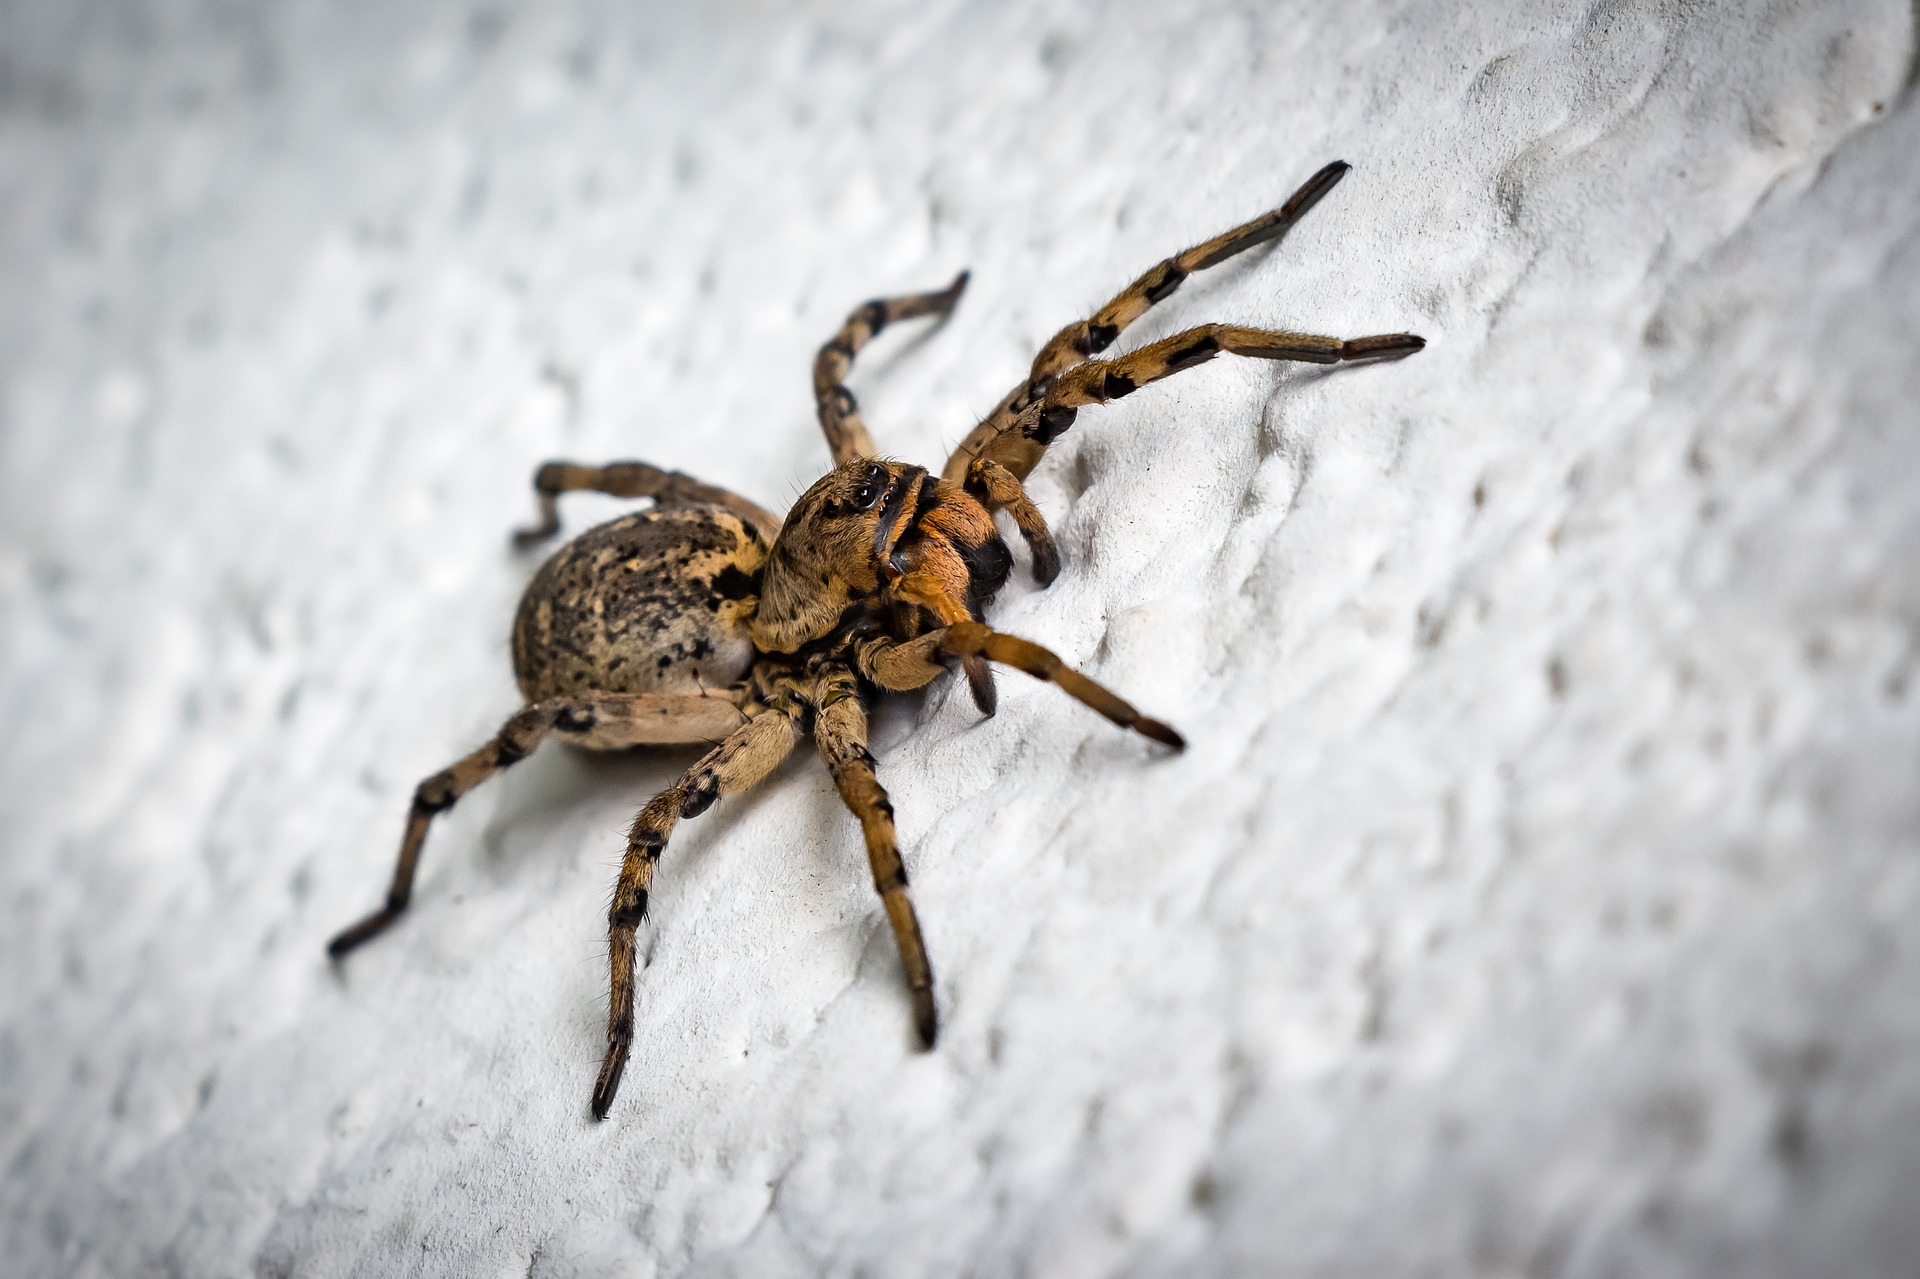 Mittel gegen Spinnen: Was hilft wirklich?